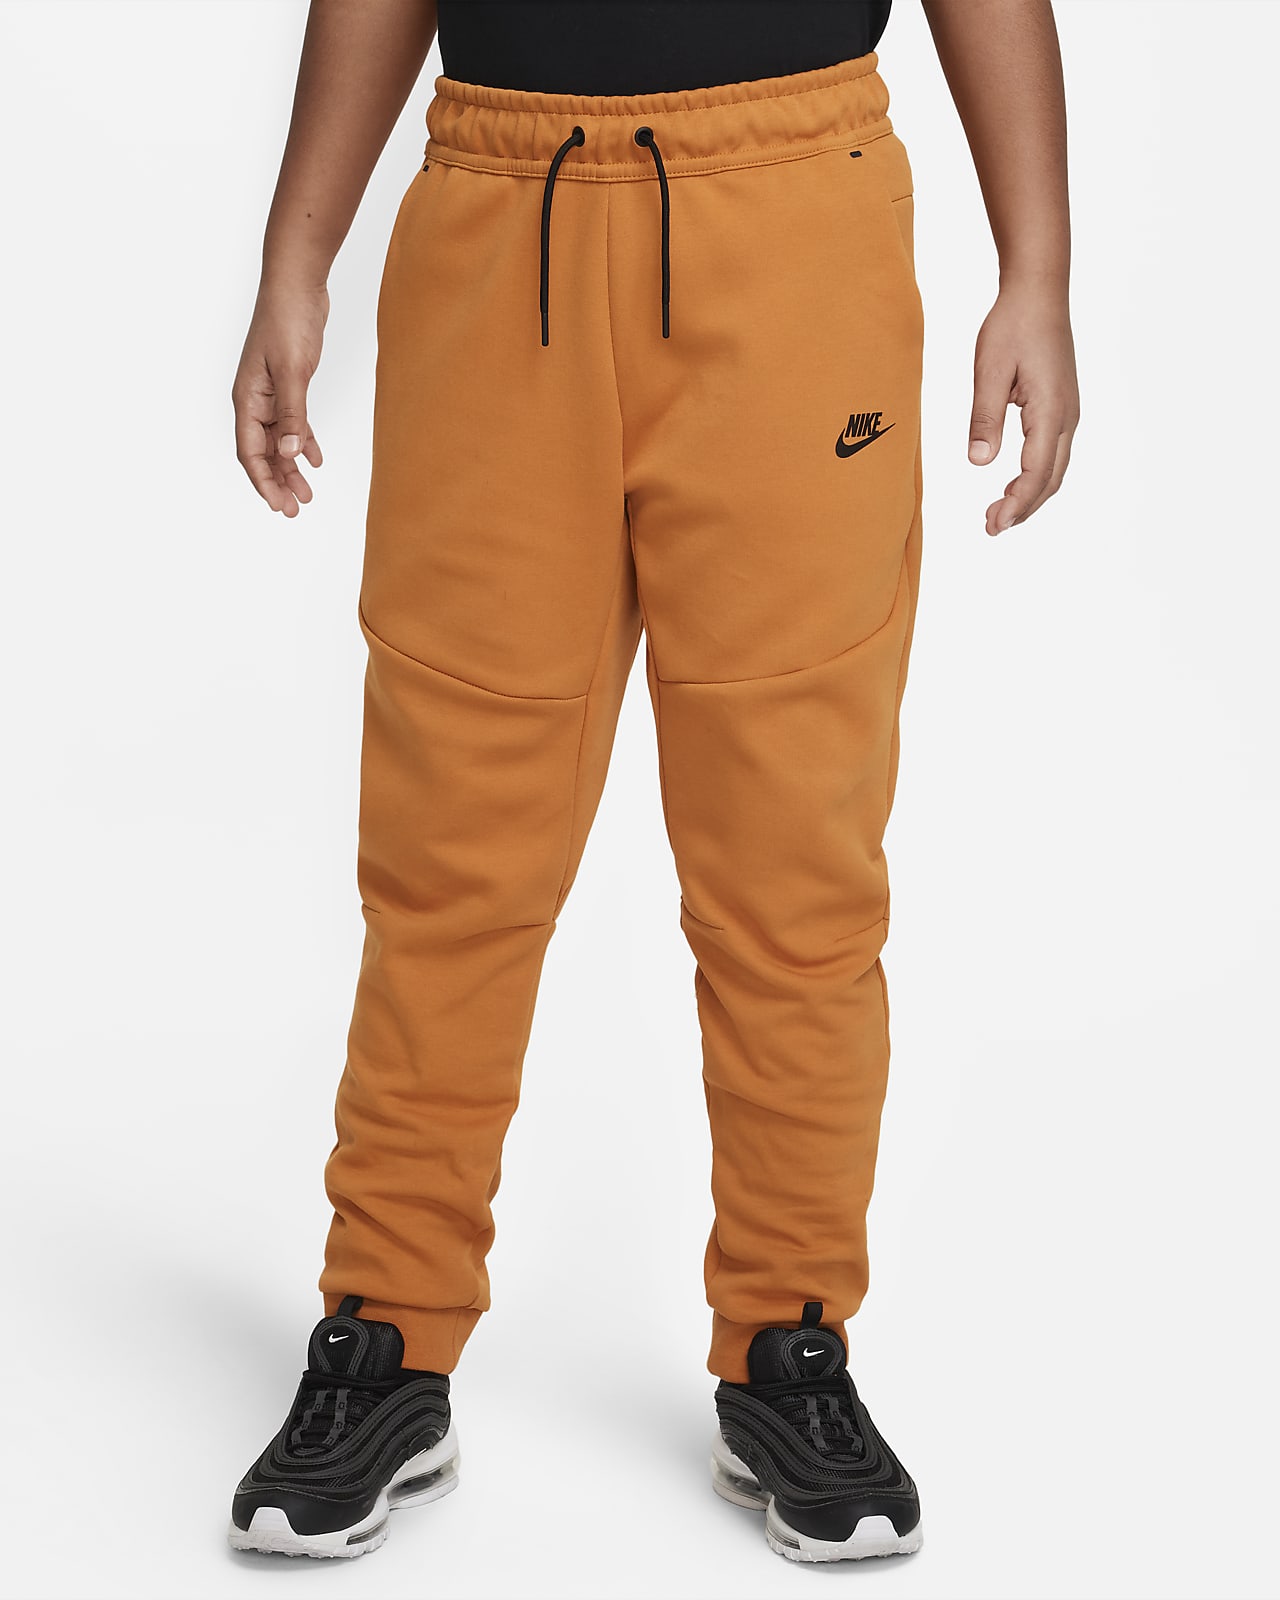 Nike Sportswear Tech Fleece Big Kids' Pants (Extended Size). .com